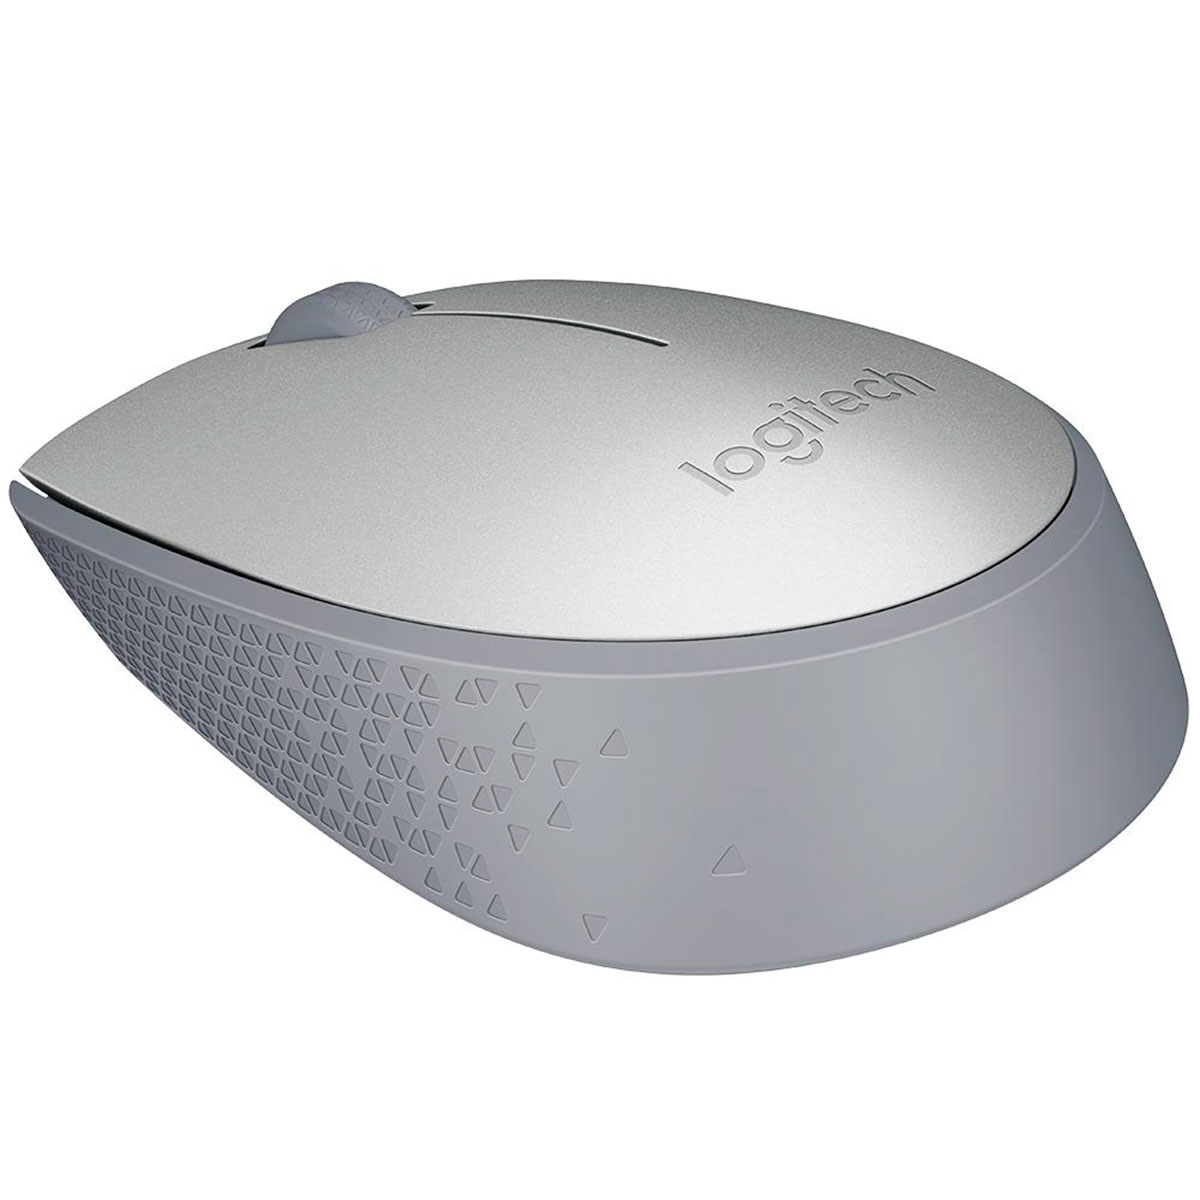 Mouse Logitech M170, Prata, Wireless